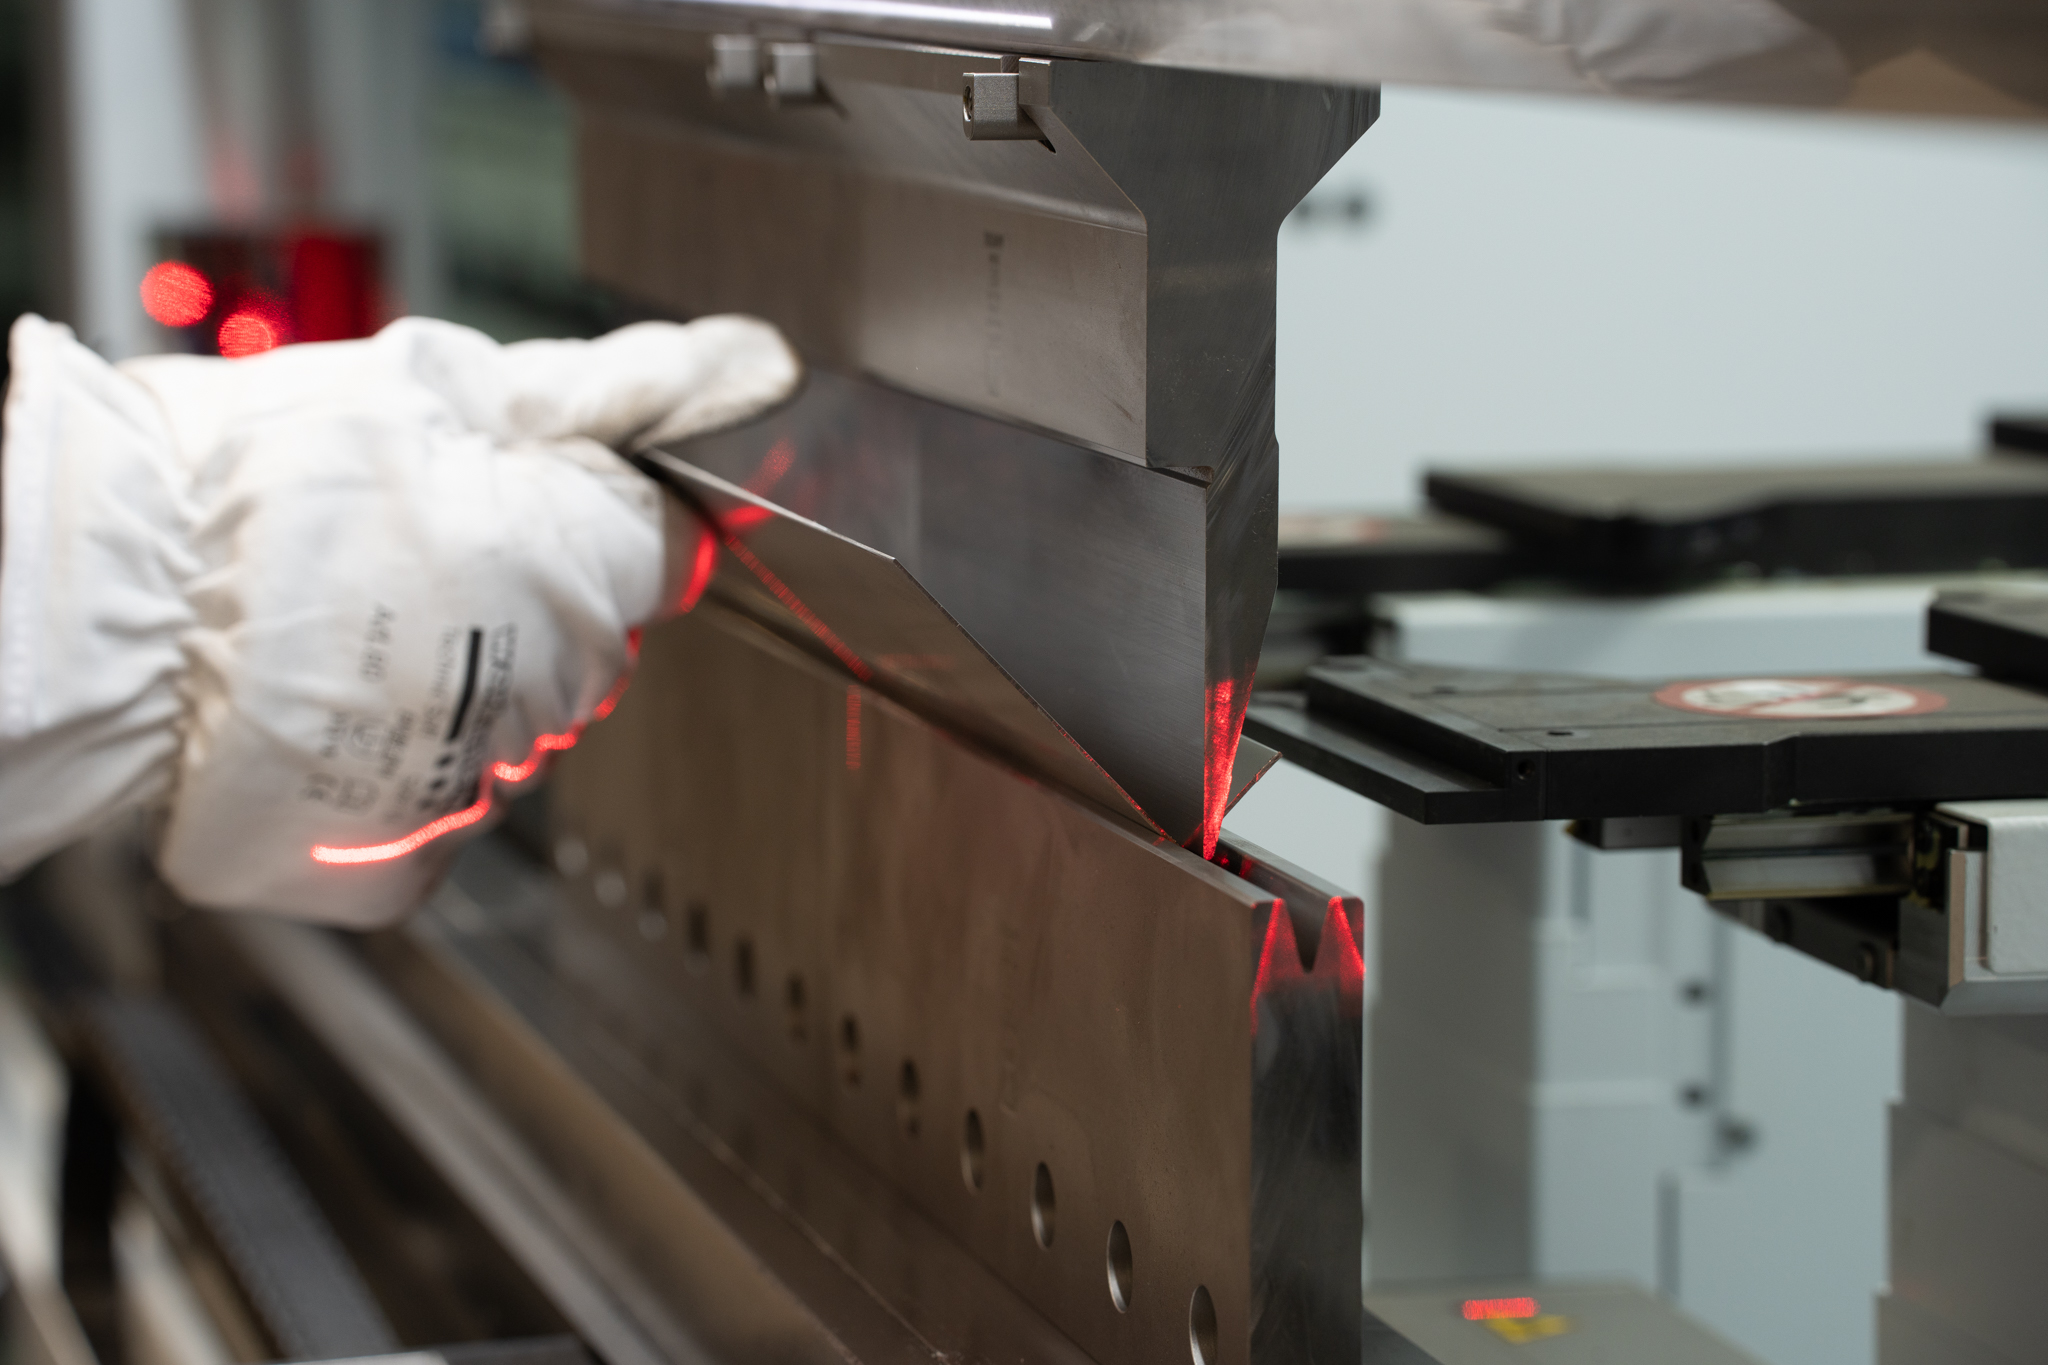 Kantbukning af metalelement af autoriseret CNC Kantbukker, med sikkerhedshandsker og lasermåling